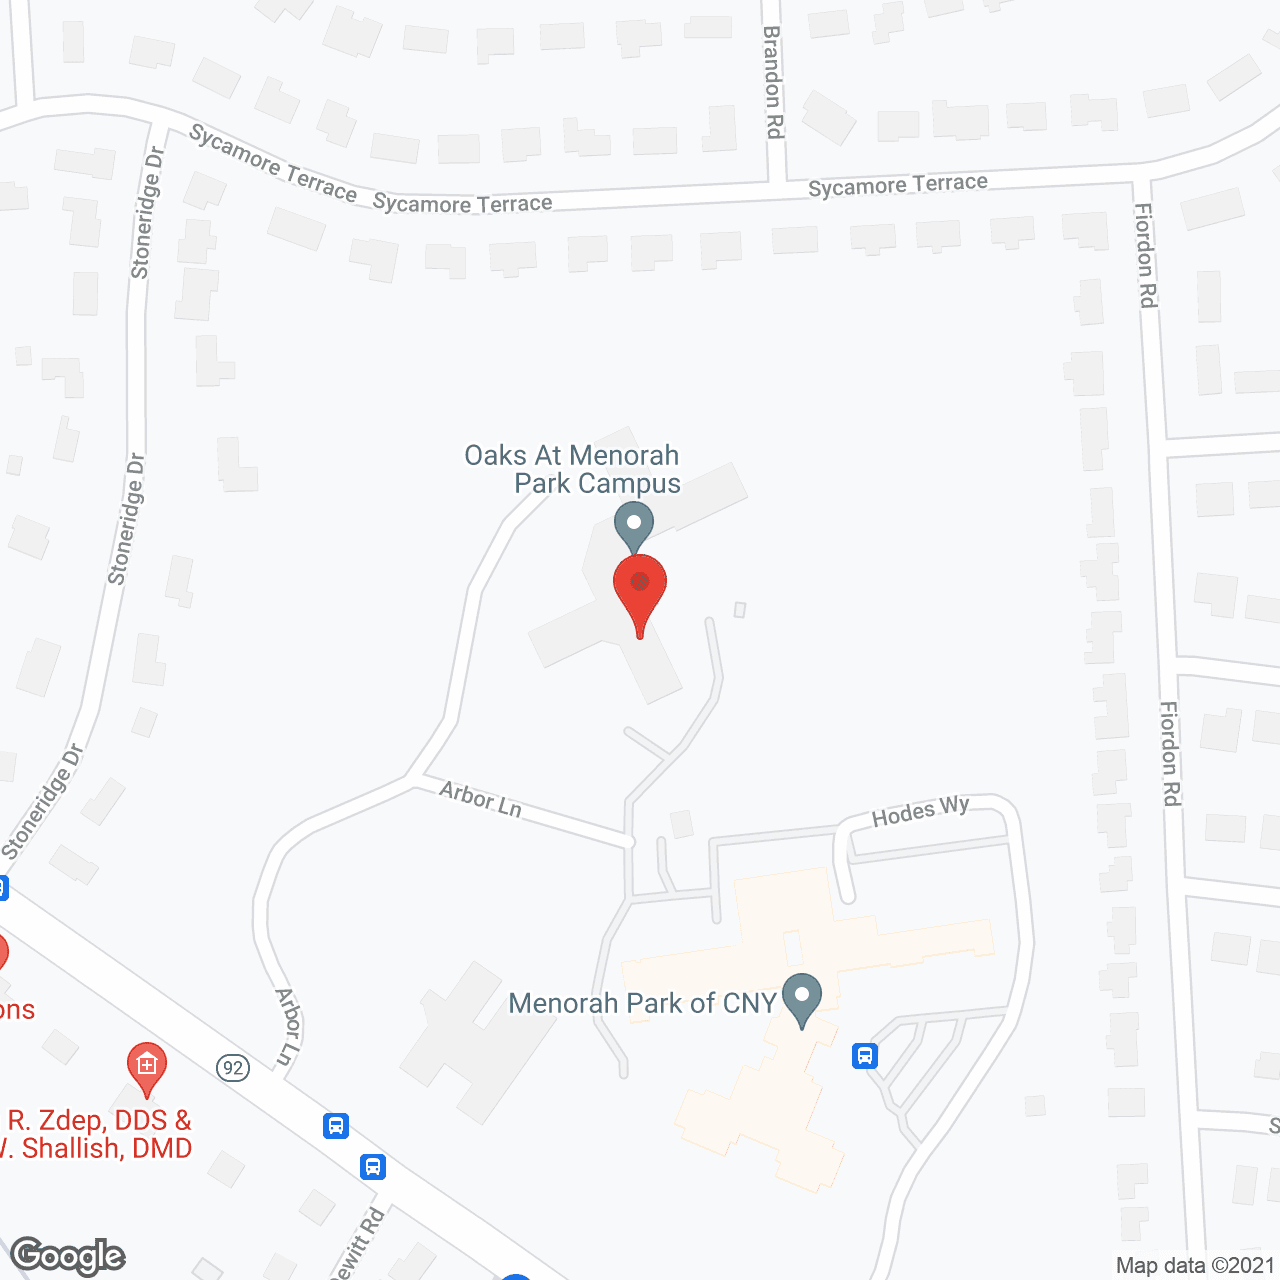 The Oaks At Menorah Park in google map